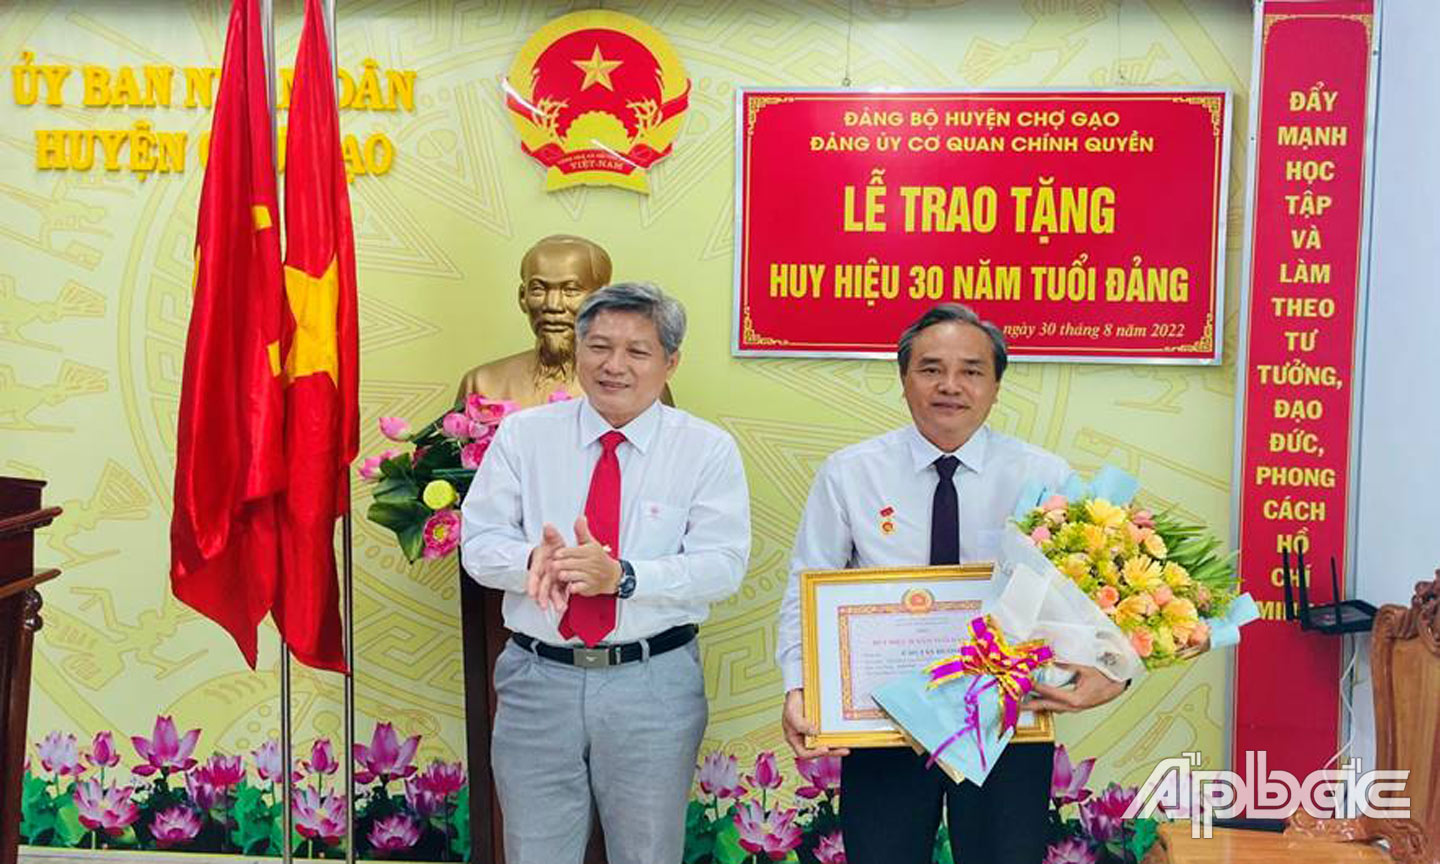 Ông Nguyễn Hồng Hữu, Tỉnh ủy viên, Phó Bí thư Huyện ủy, Chủ tịch UBND huyện Chợ Gạo trao Huy hiệu 30 năm tuổi Đảng cho đồng chí Cao Tấn Hưởng.